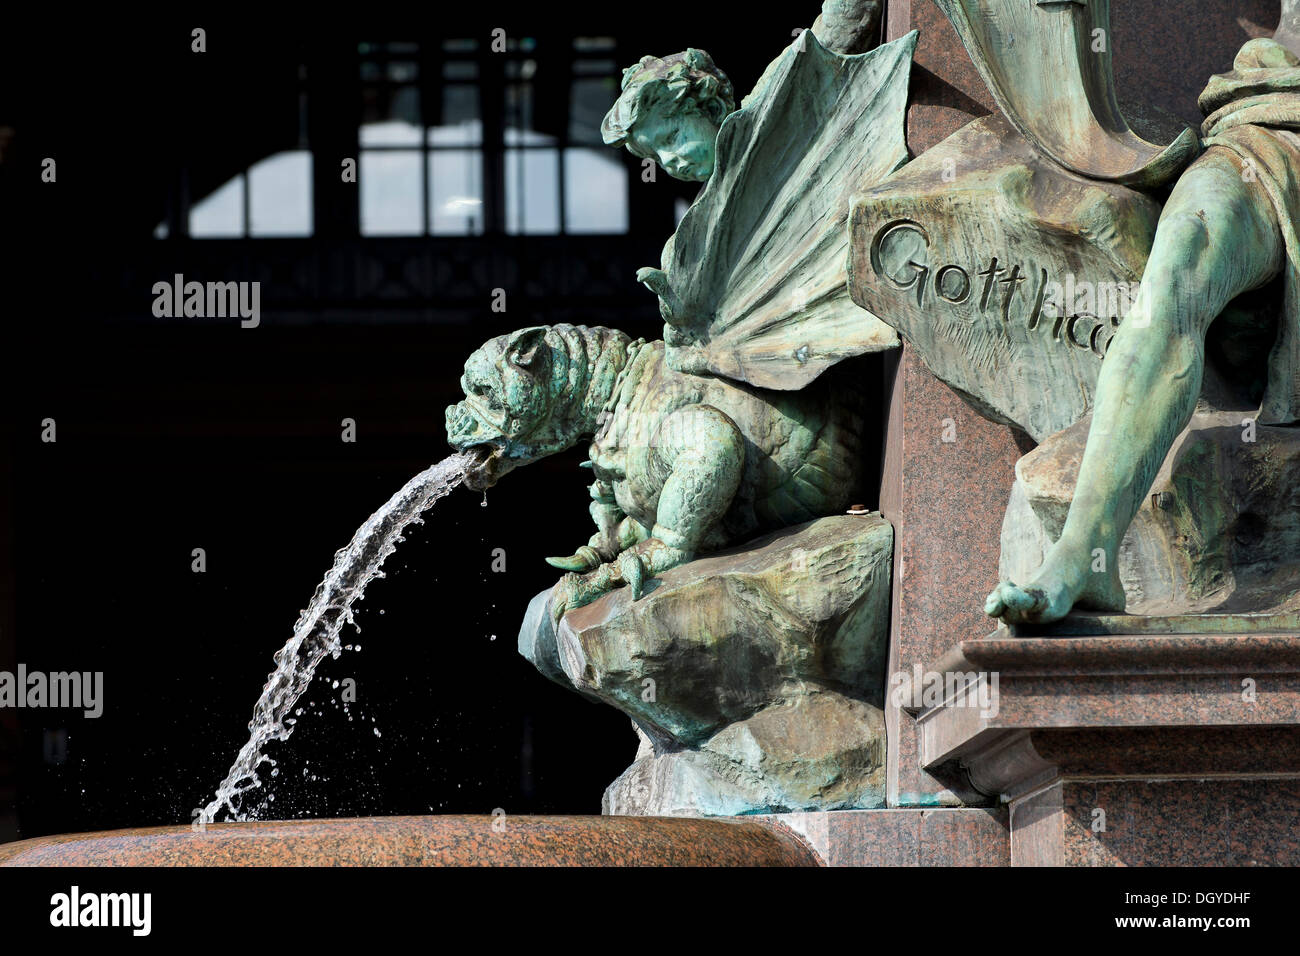 Vue de détail d'une gargouille, Monumentalbrunnen fontaine par Richard Kissling, entrée de la gare centrale, Zurich Banque D'Images